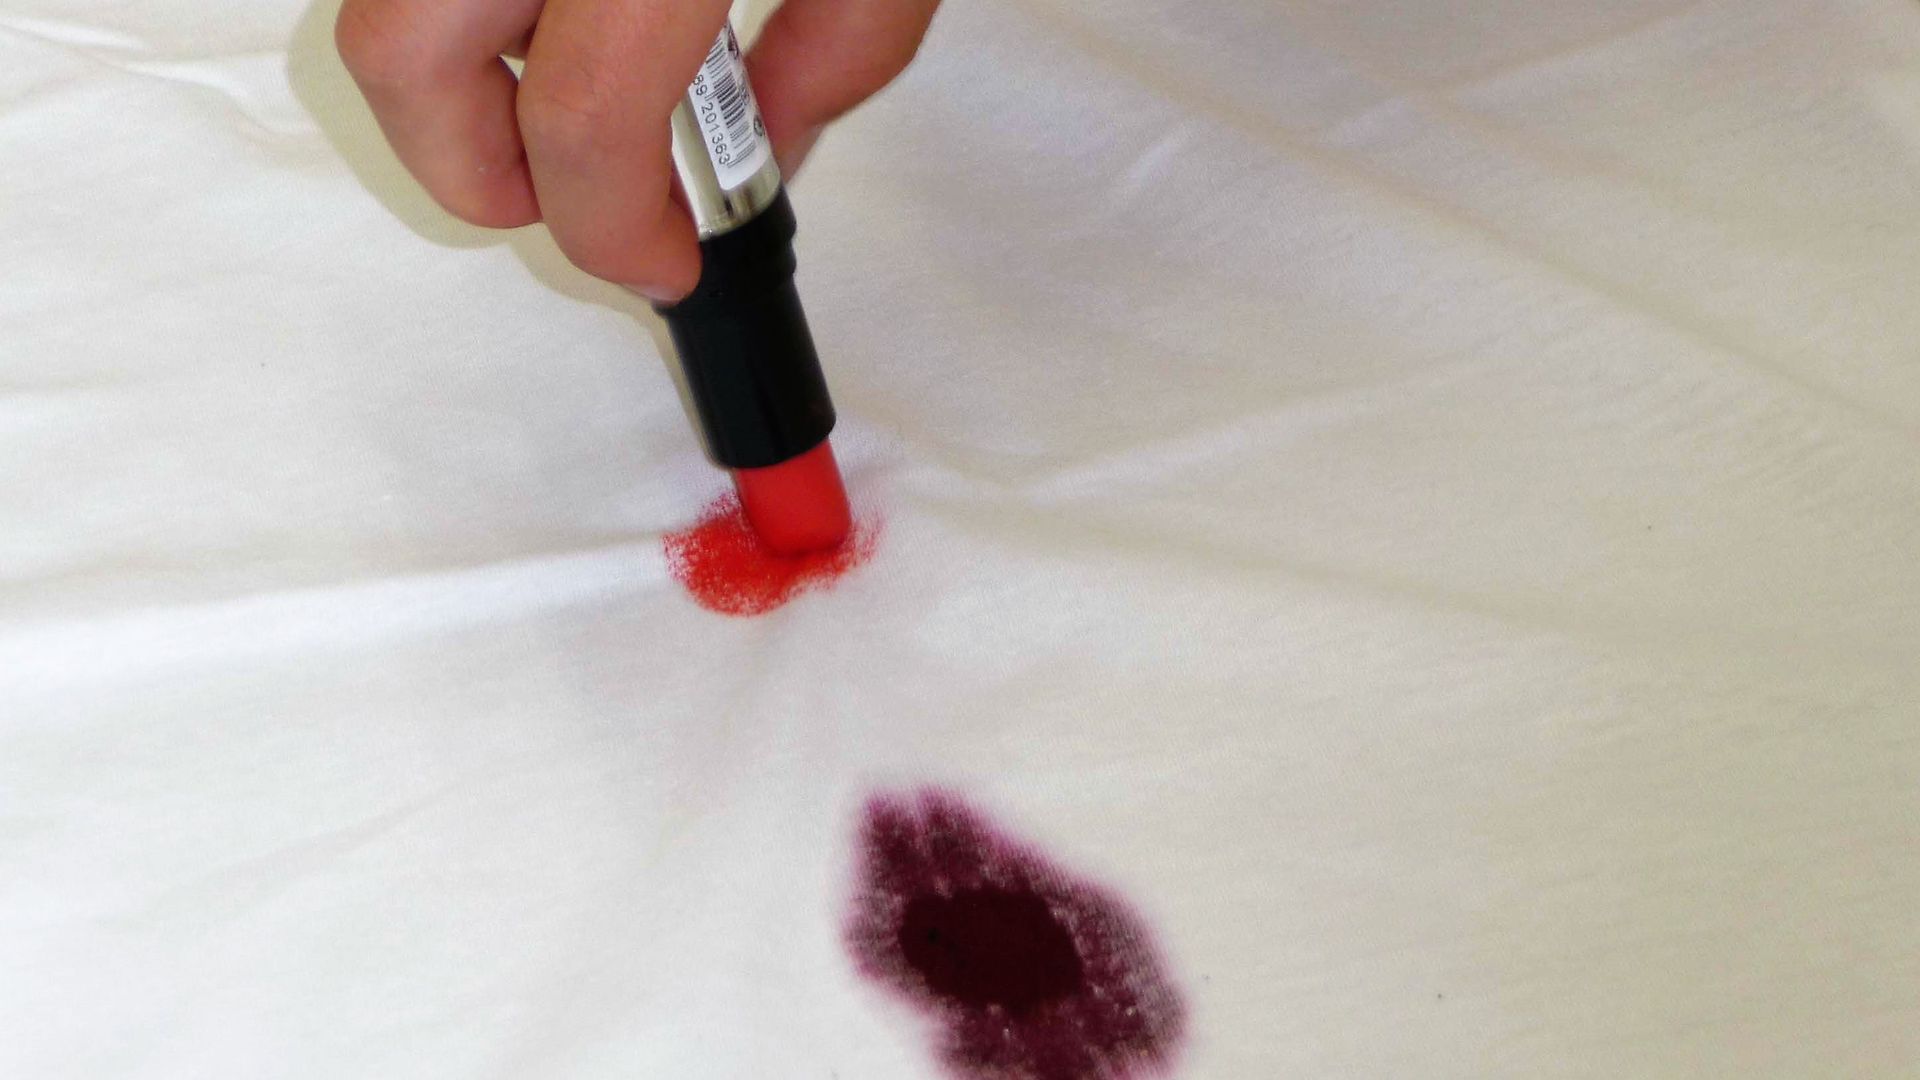 Рука пишет на белой ткани помадой рядом с пятном от красного вина